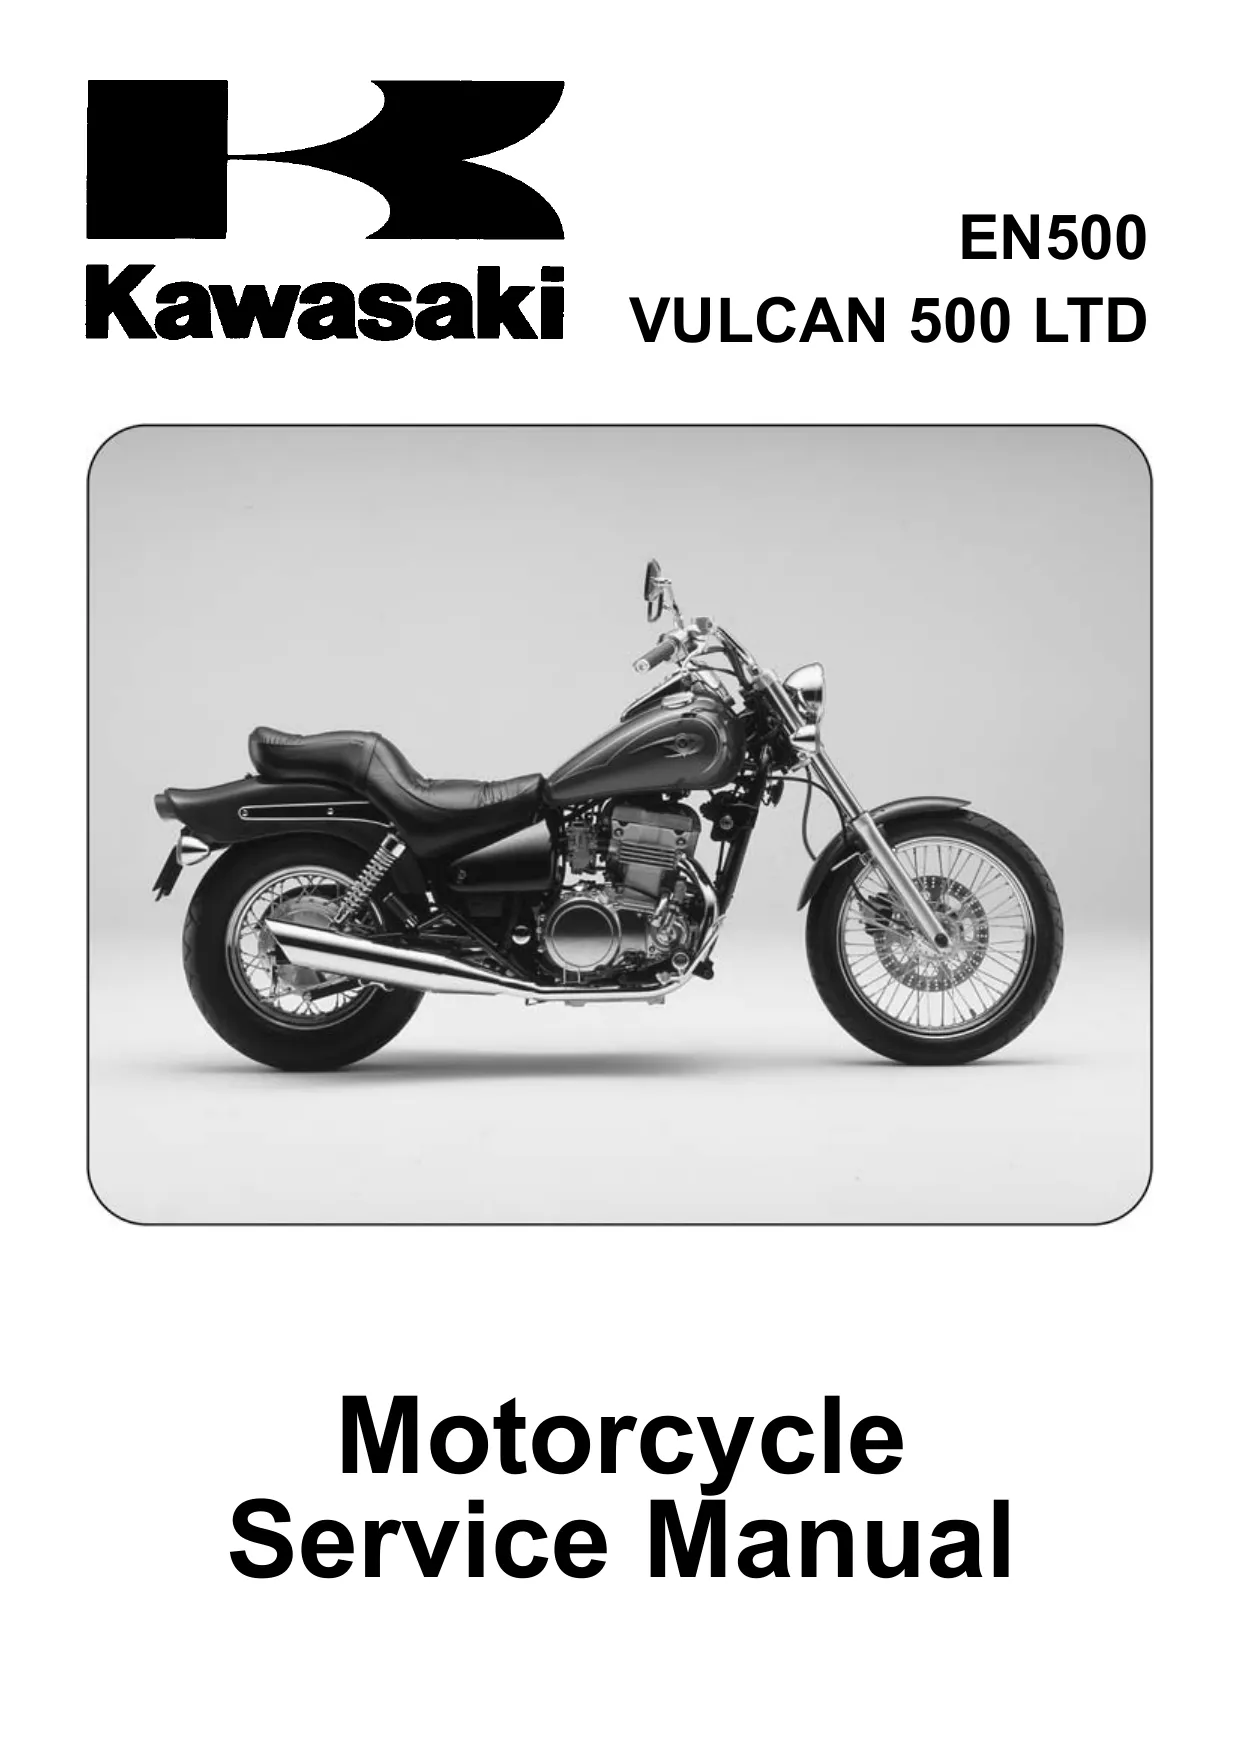 1996-2008 Kawasaki EN500, Vulcan 500 LTD repair manual Preview image 1